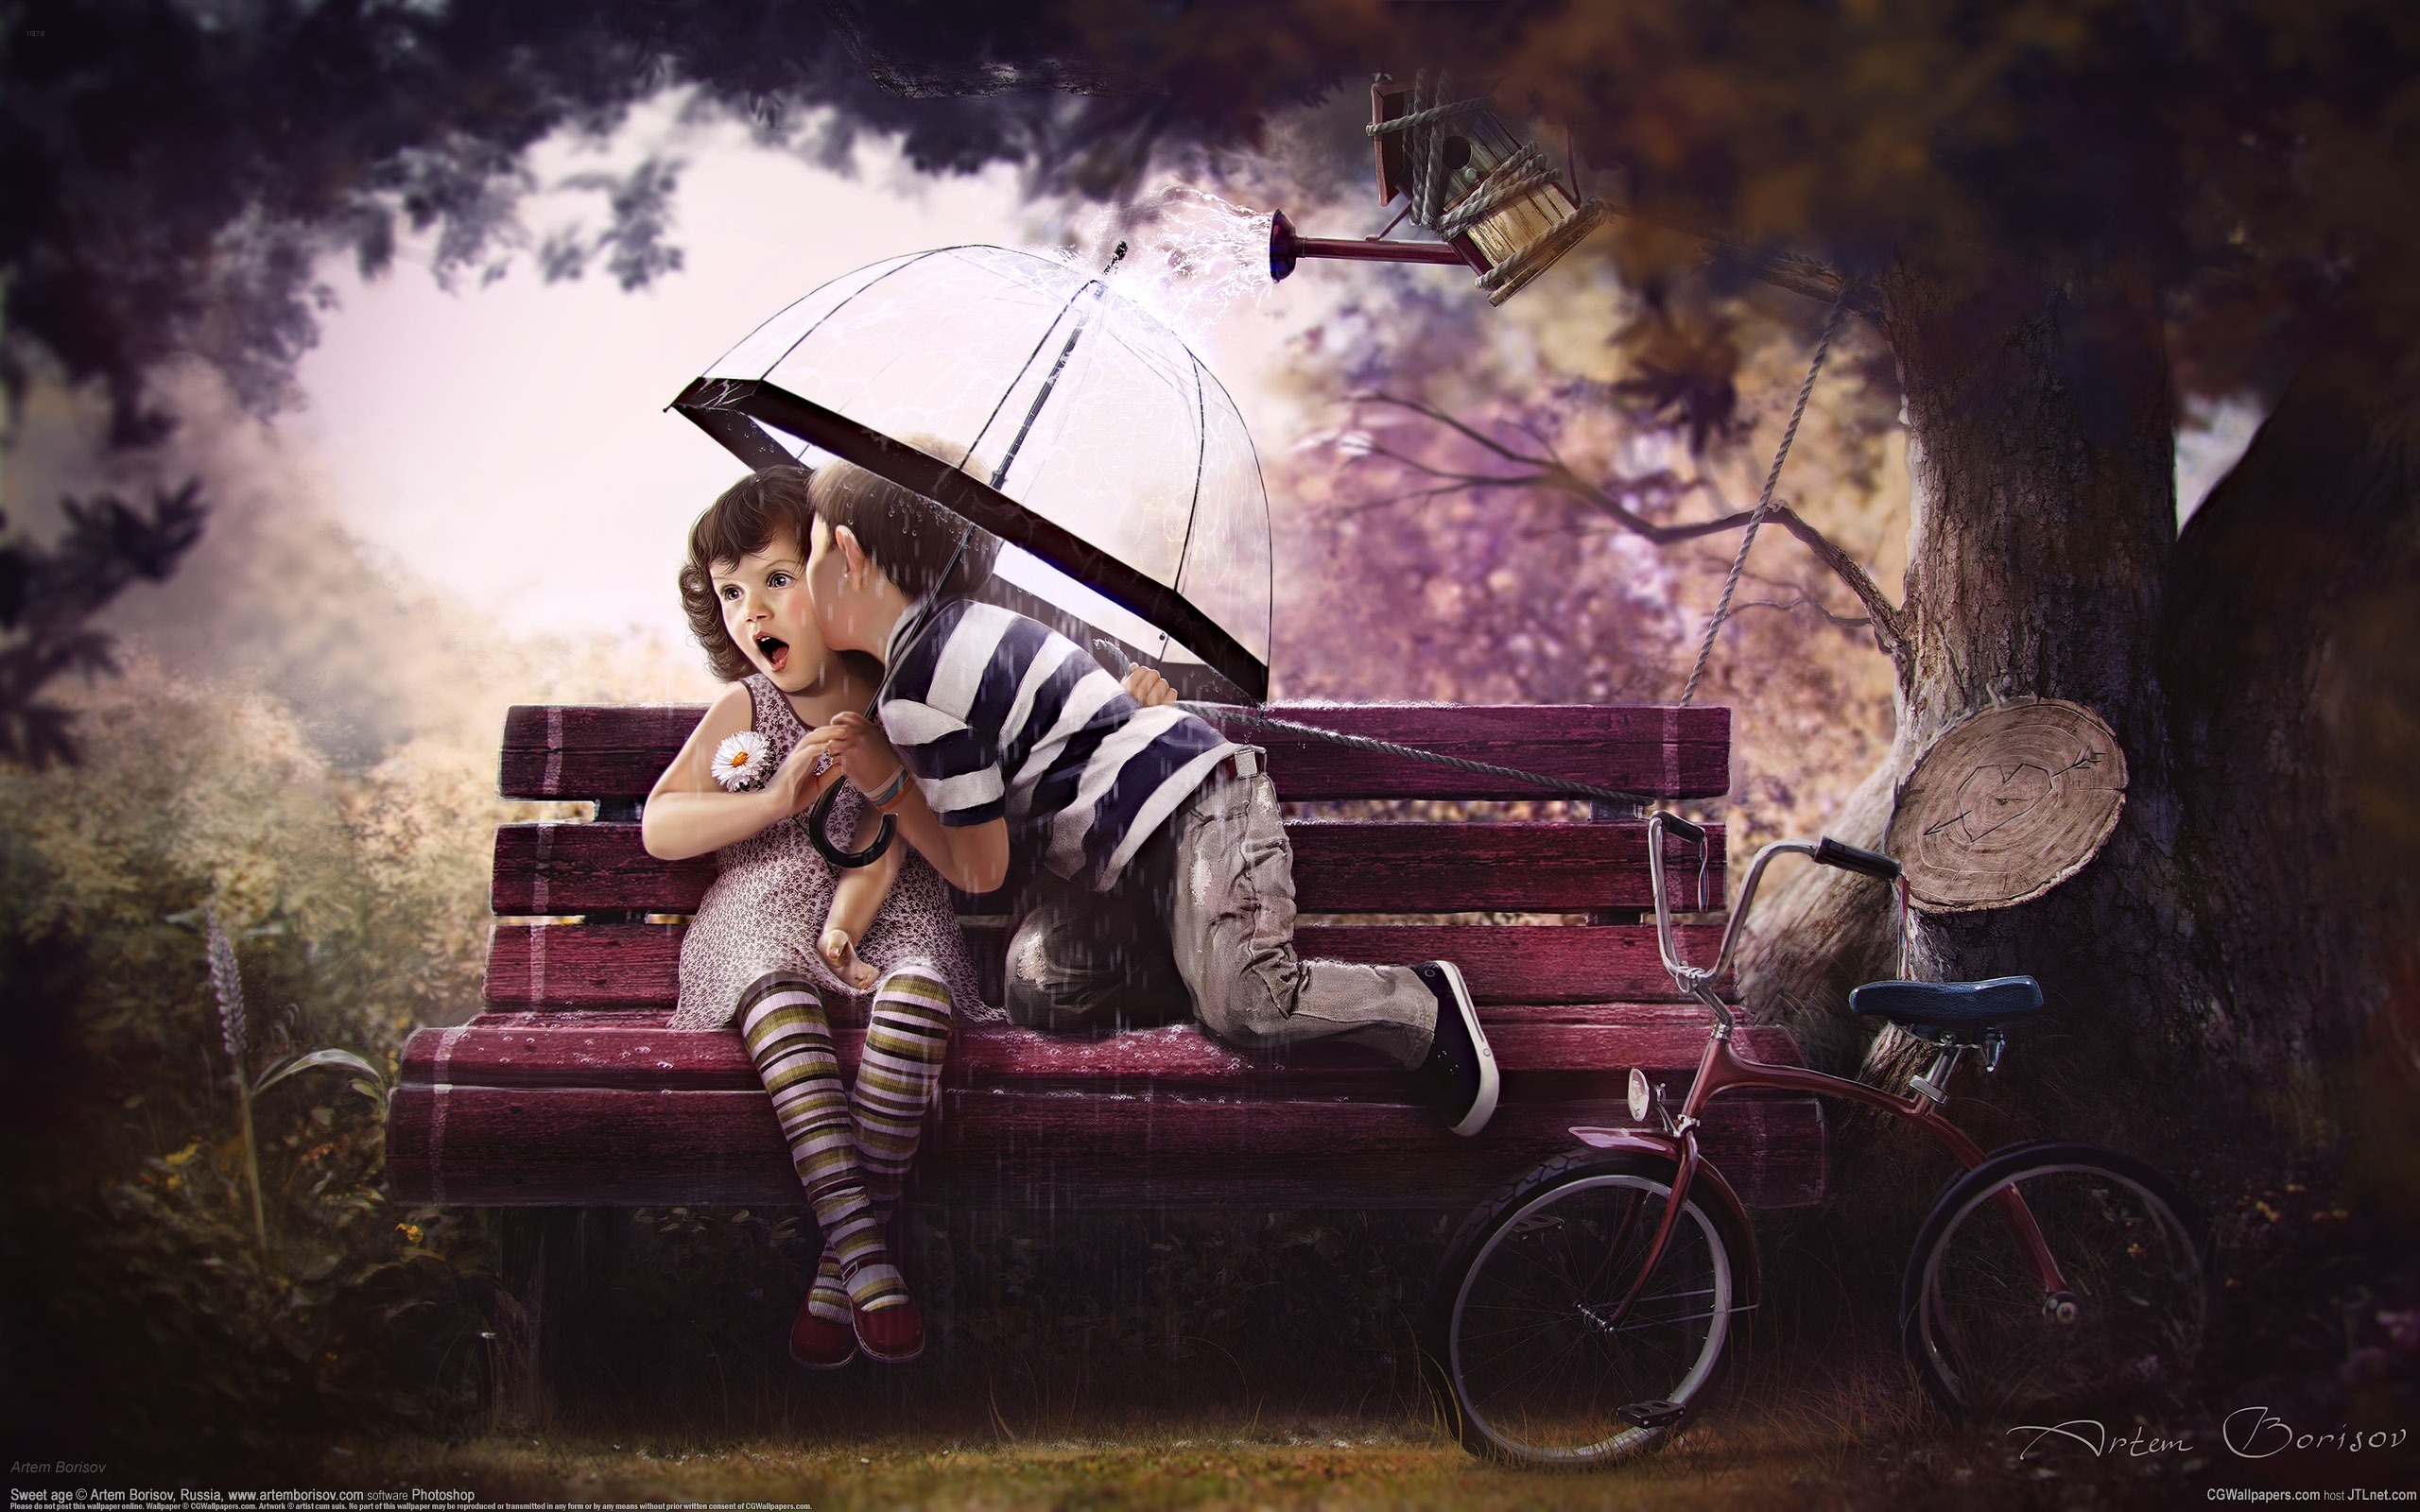 3d обои Дети на скамейке, мальчик целует девочку сидящую под зонтом, спасаясь от дождика из лейки  дождь # 34320